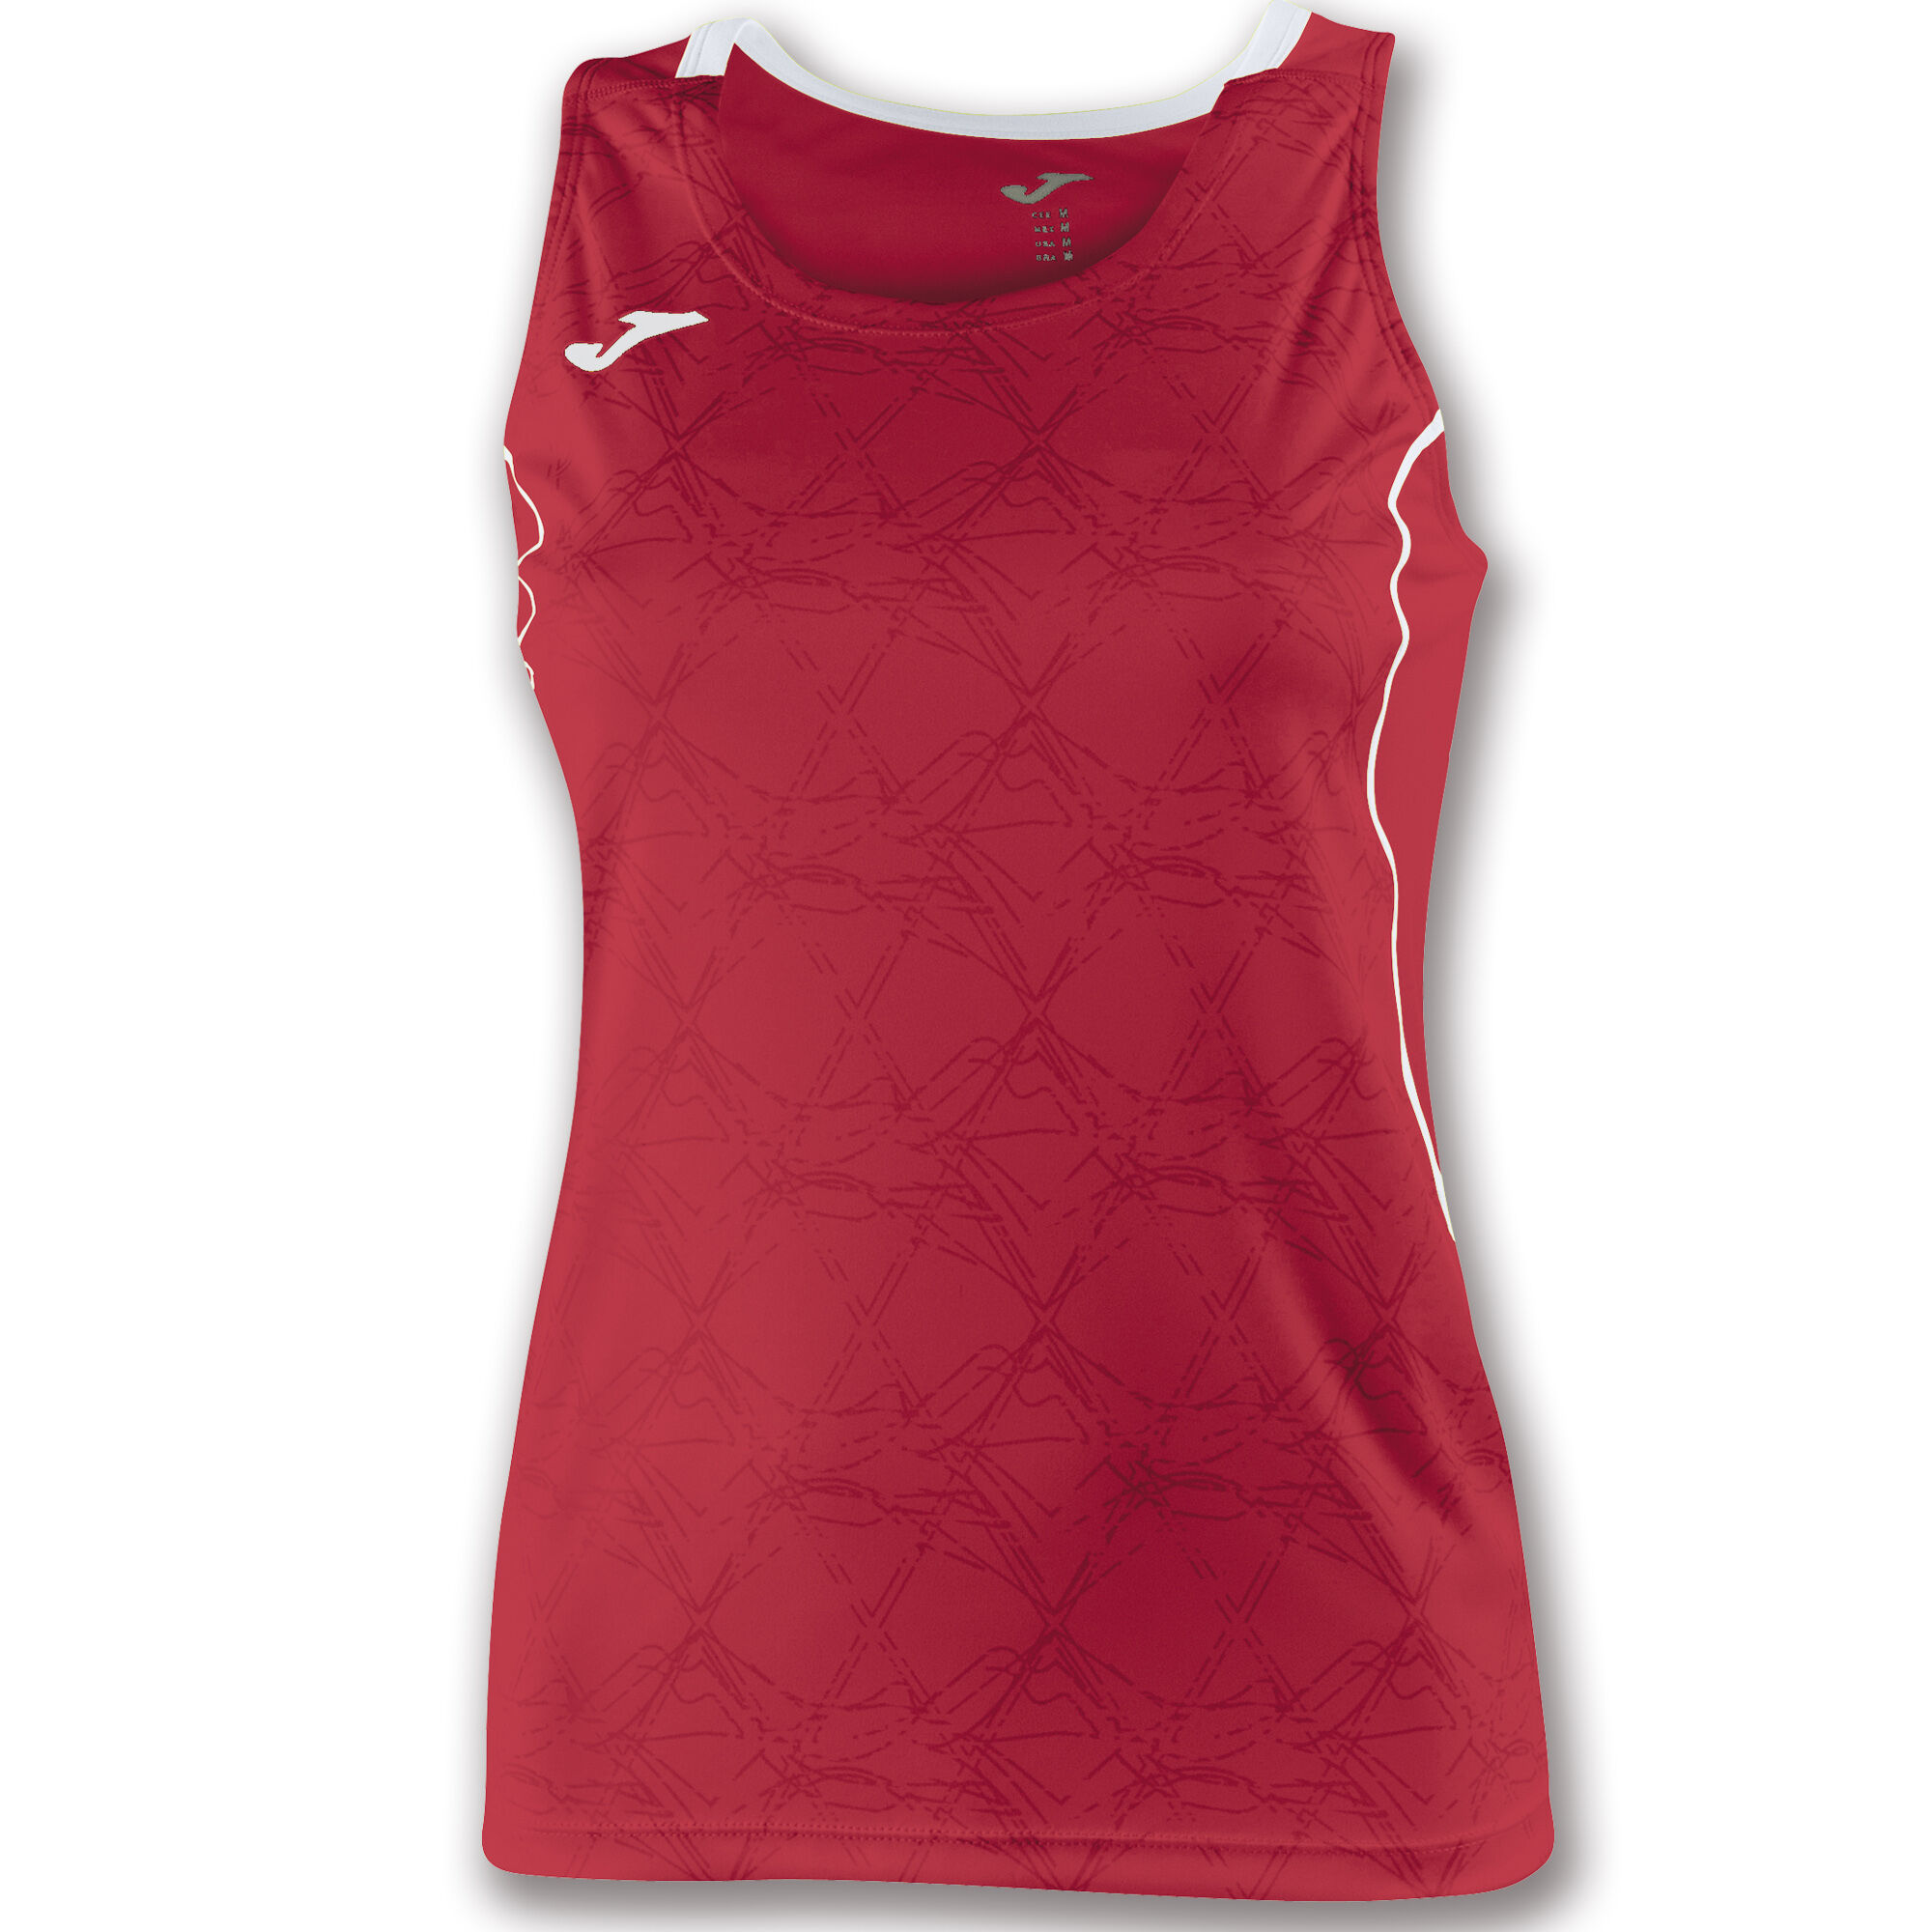 Camiseta sin mangas mujer Olimpia rojo blanco